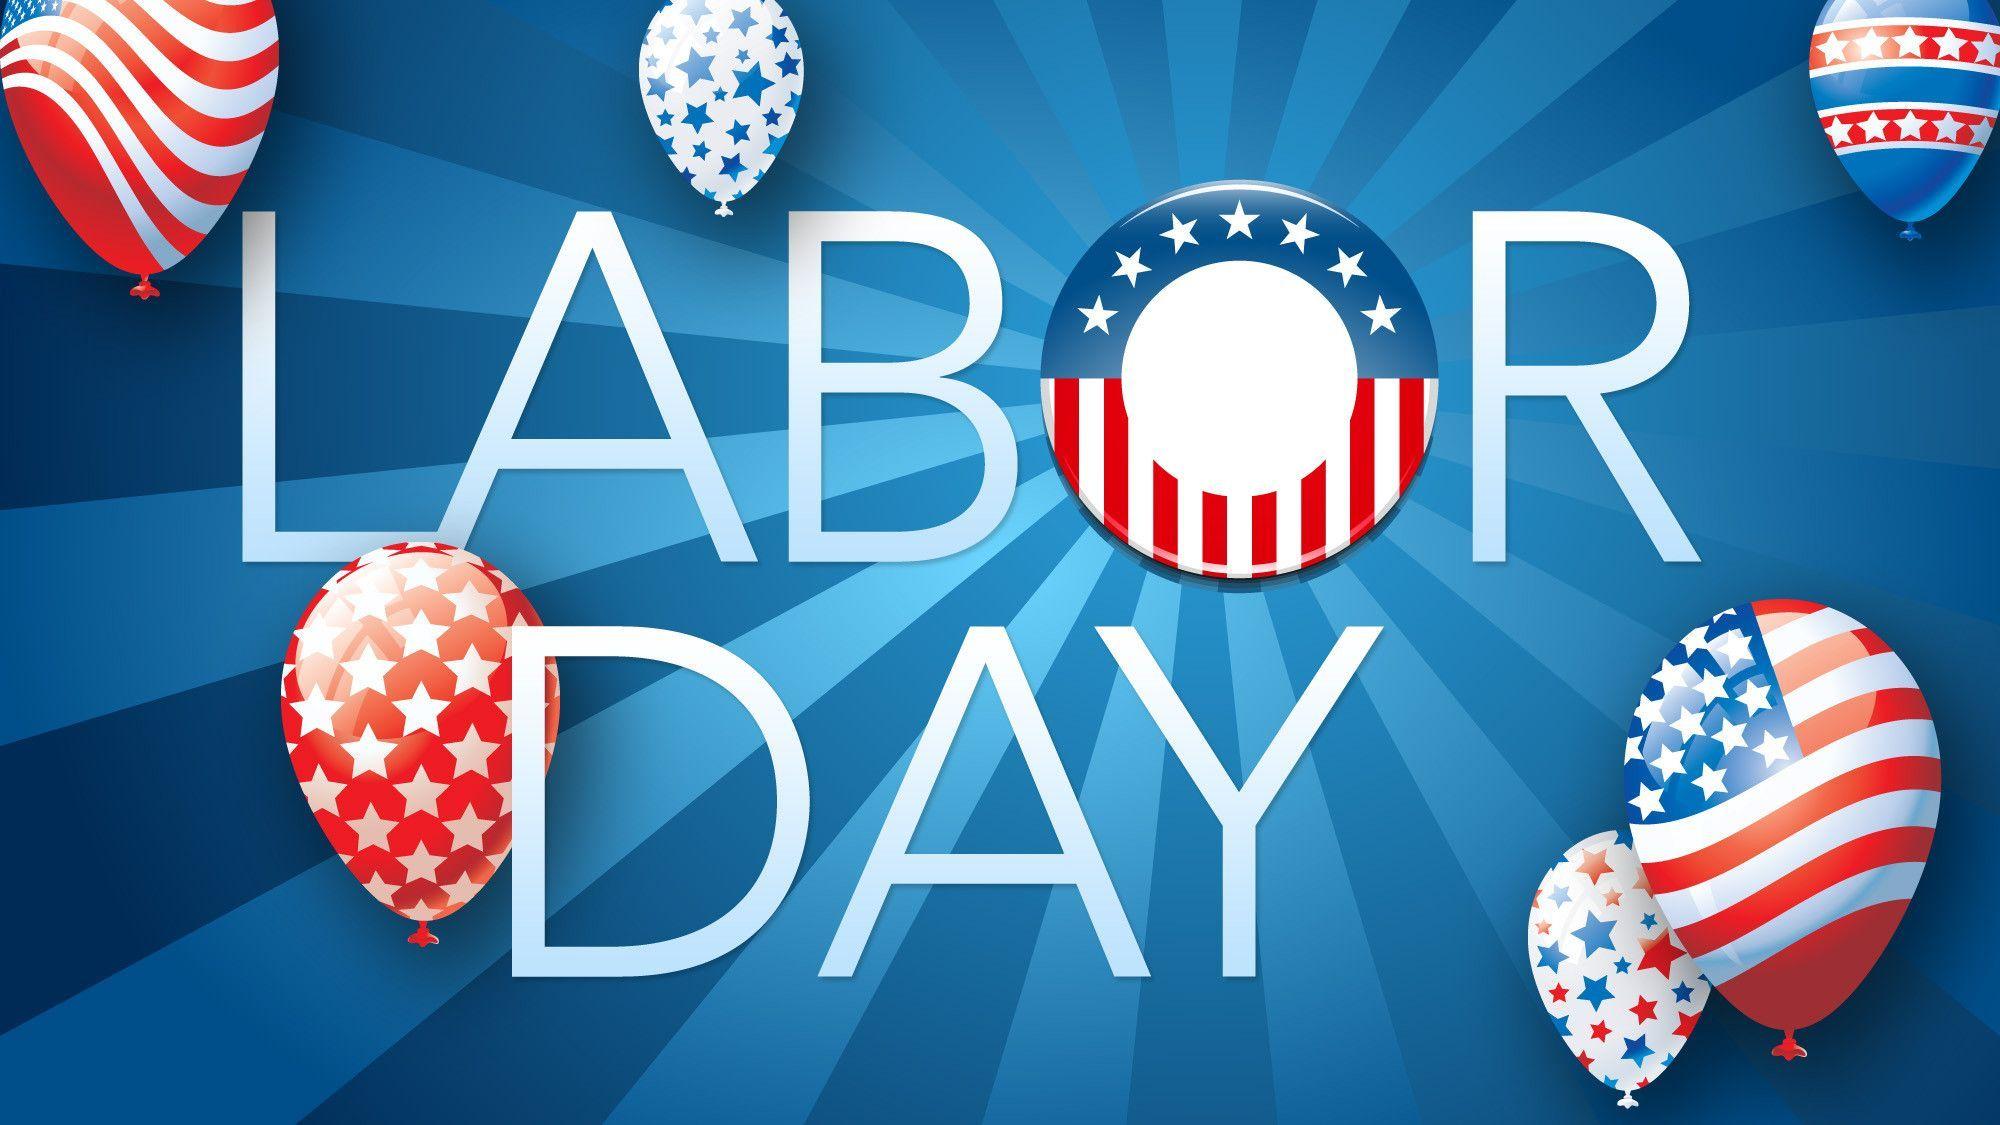 Happy USA Labor Day Wallpaper Photo 2014